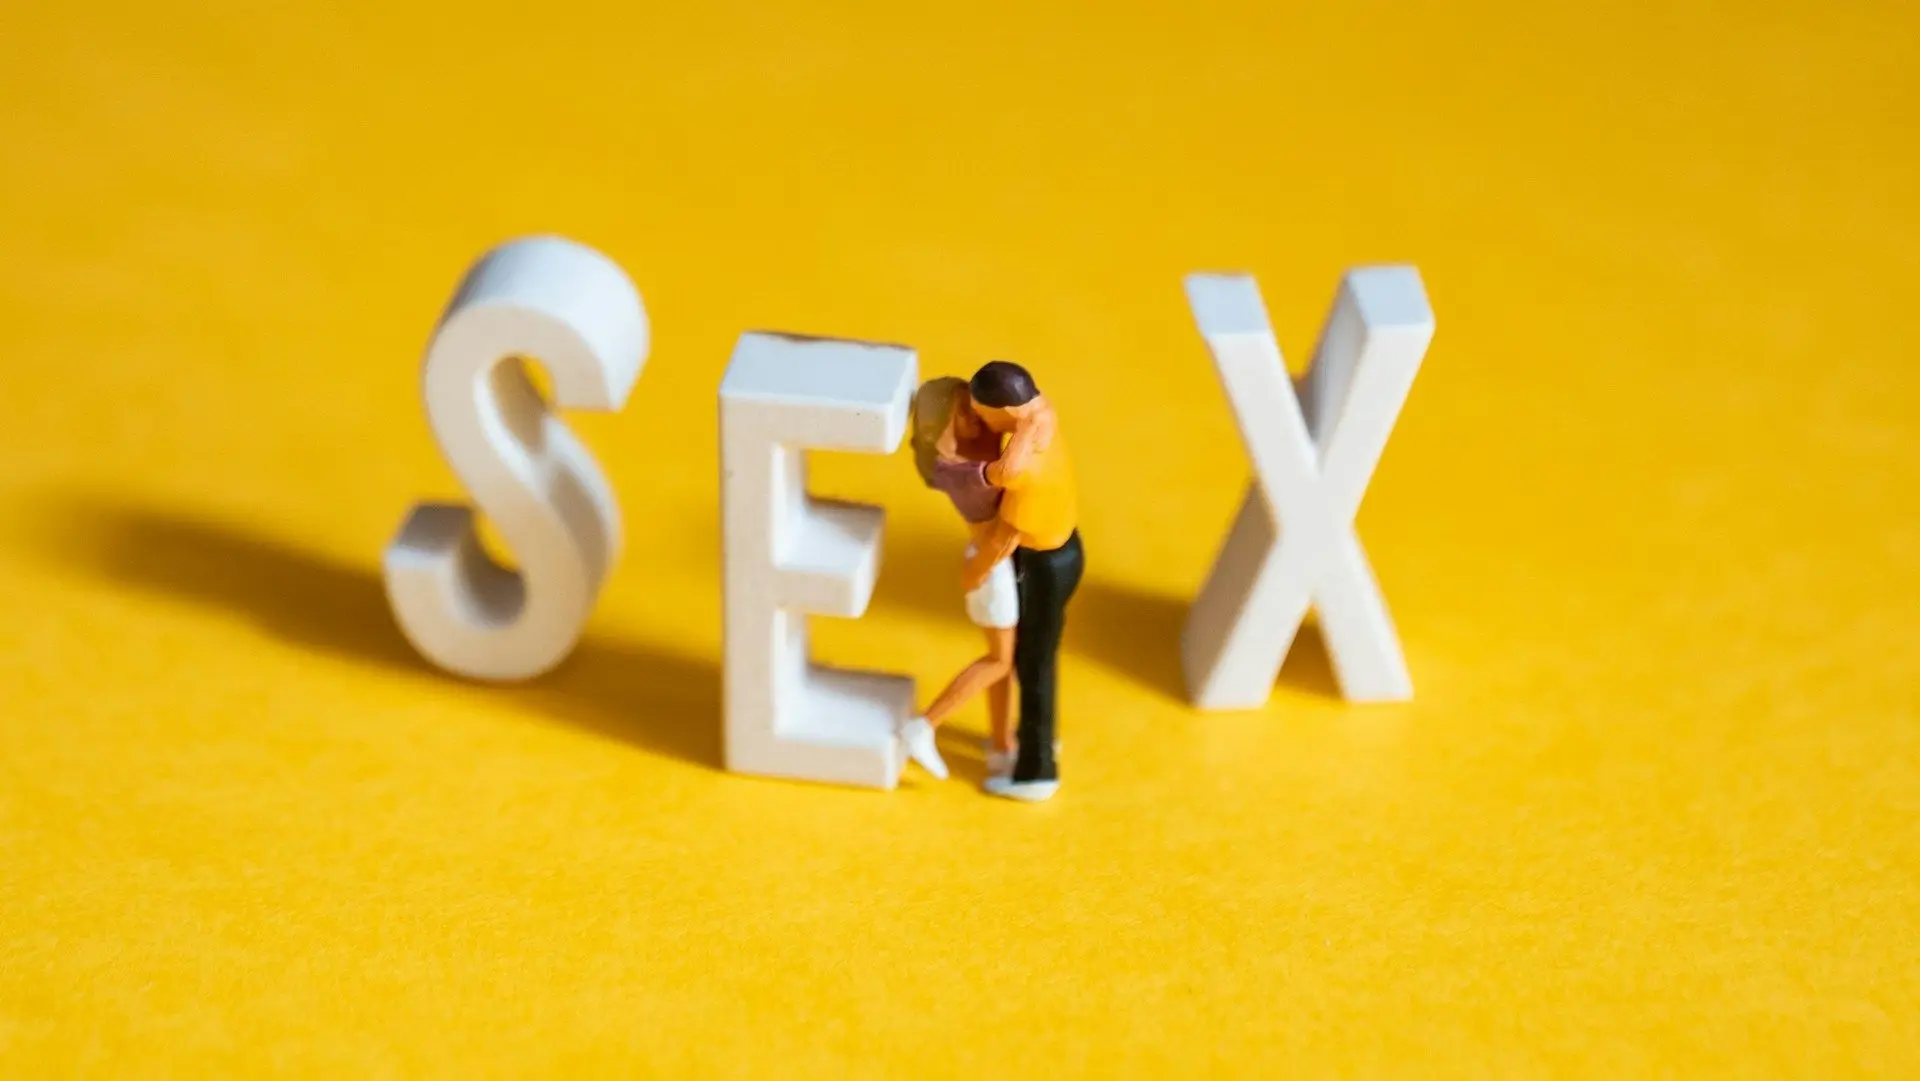 Сексолог - це фахівець, який займається проблемами сексуальності та відносин між людьми. Він може допомогти в розв'язанні таких проблем, як сексуальна дисфункція, відсутність бажання, проблеми зі статевими органами, конфлікти у сексуальних відносинах та і